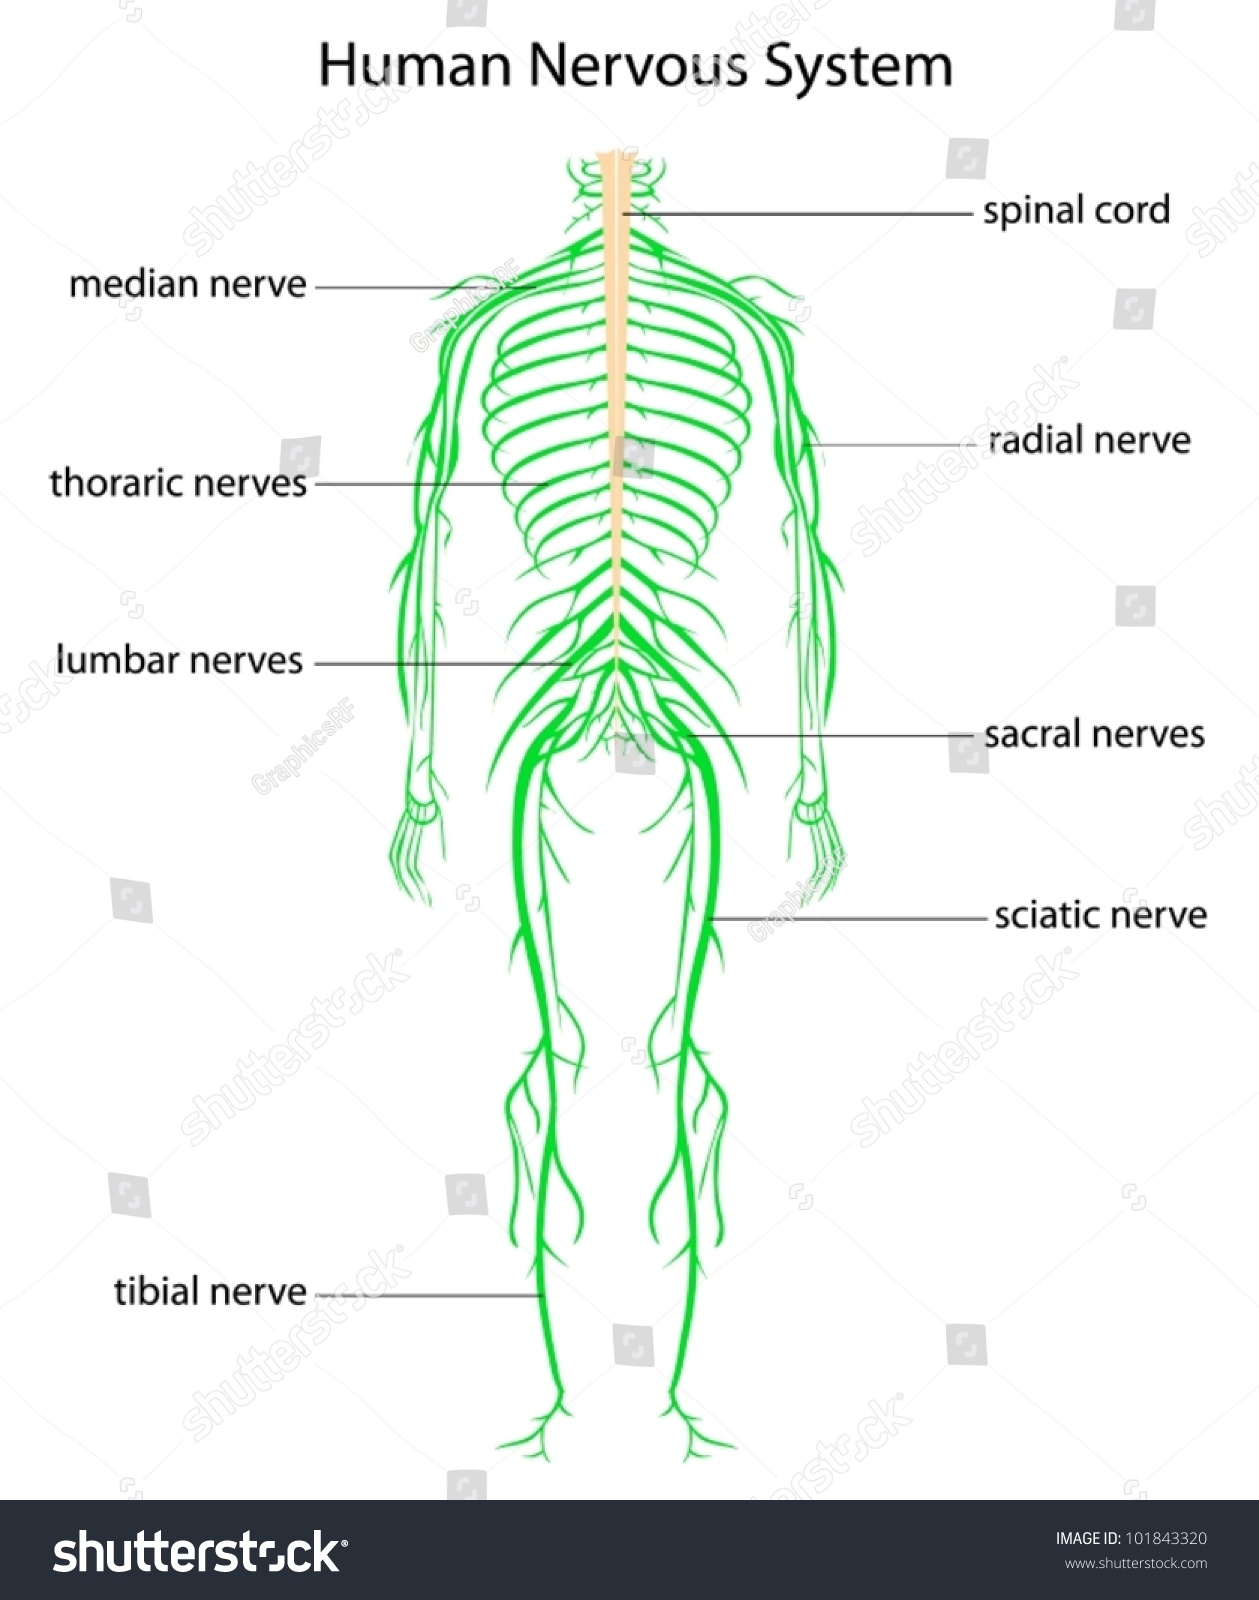 Illustration Human Nervous System Labels Stock Vector ... fox nervous system diagram 